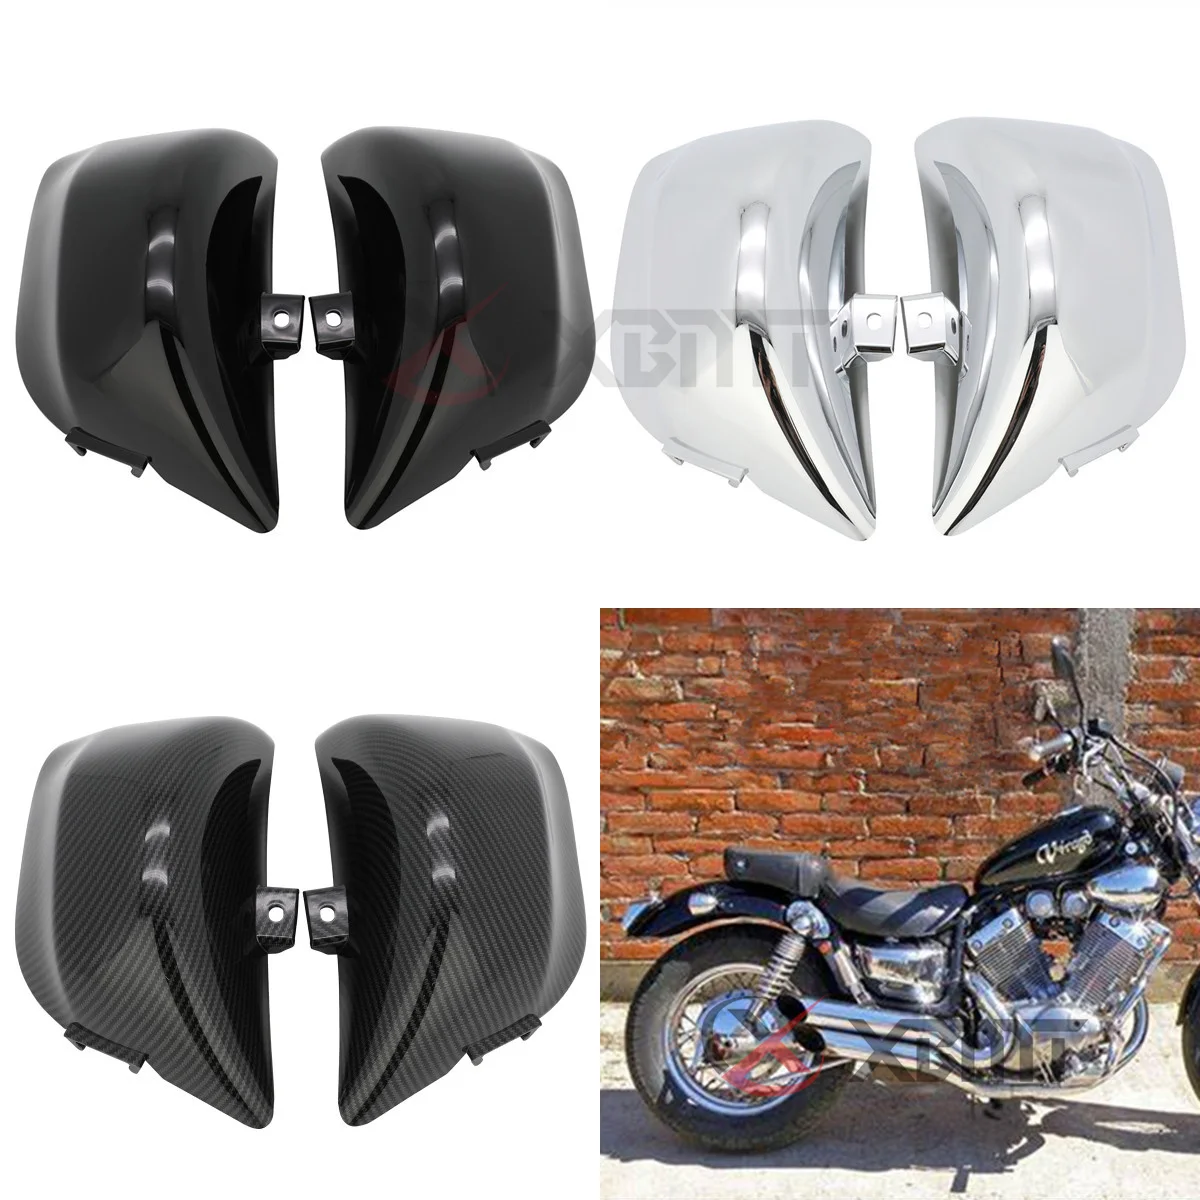 

Motorcycle Left Right Side Fairing Battery Cover For Yamaha Virago XV 400 535 XV400 XV535 1987-2021 2016 2017 2018 2019 2020